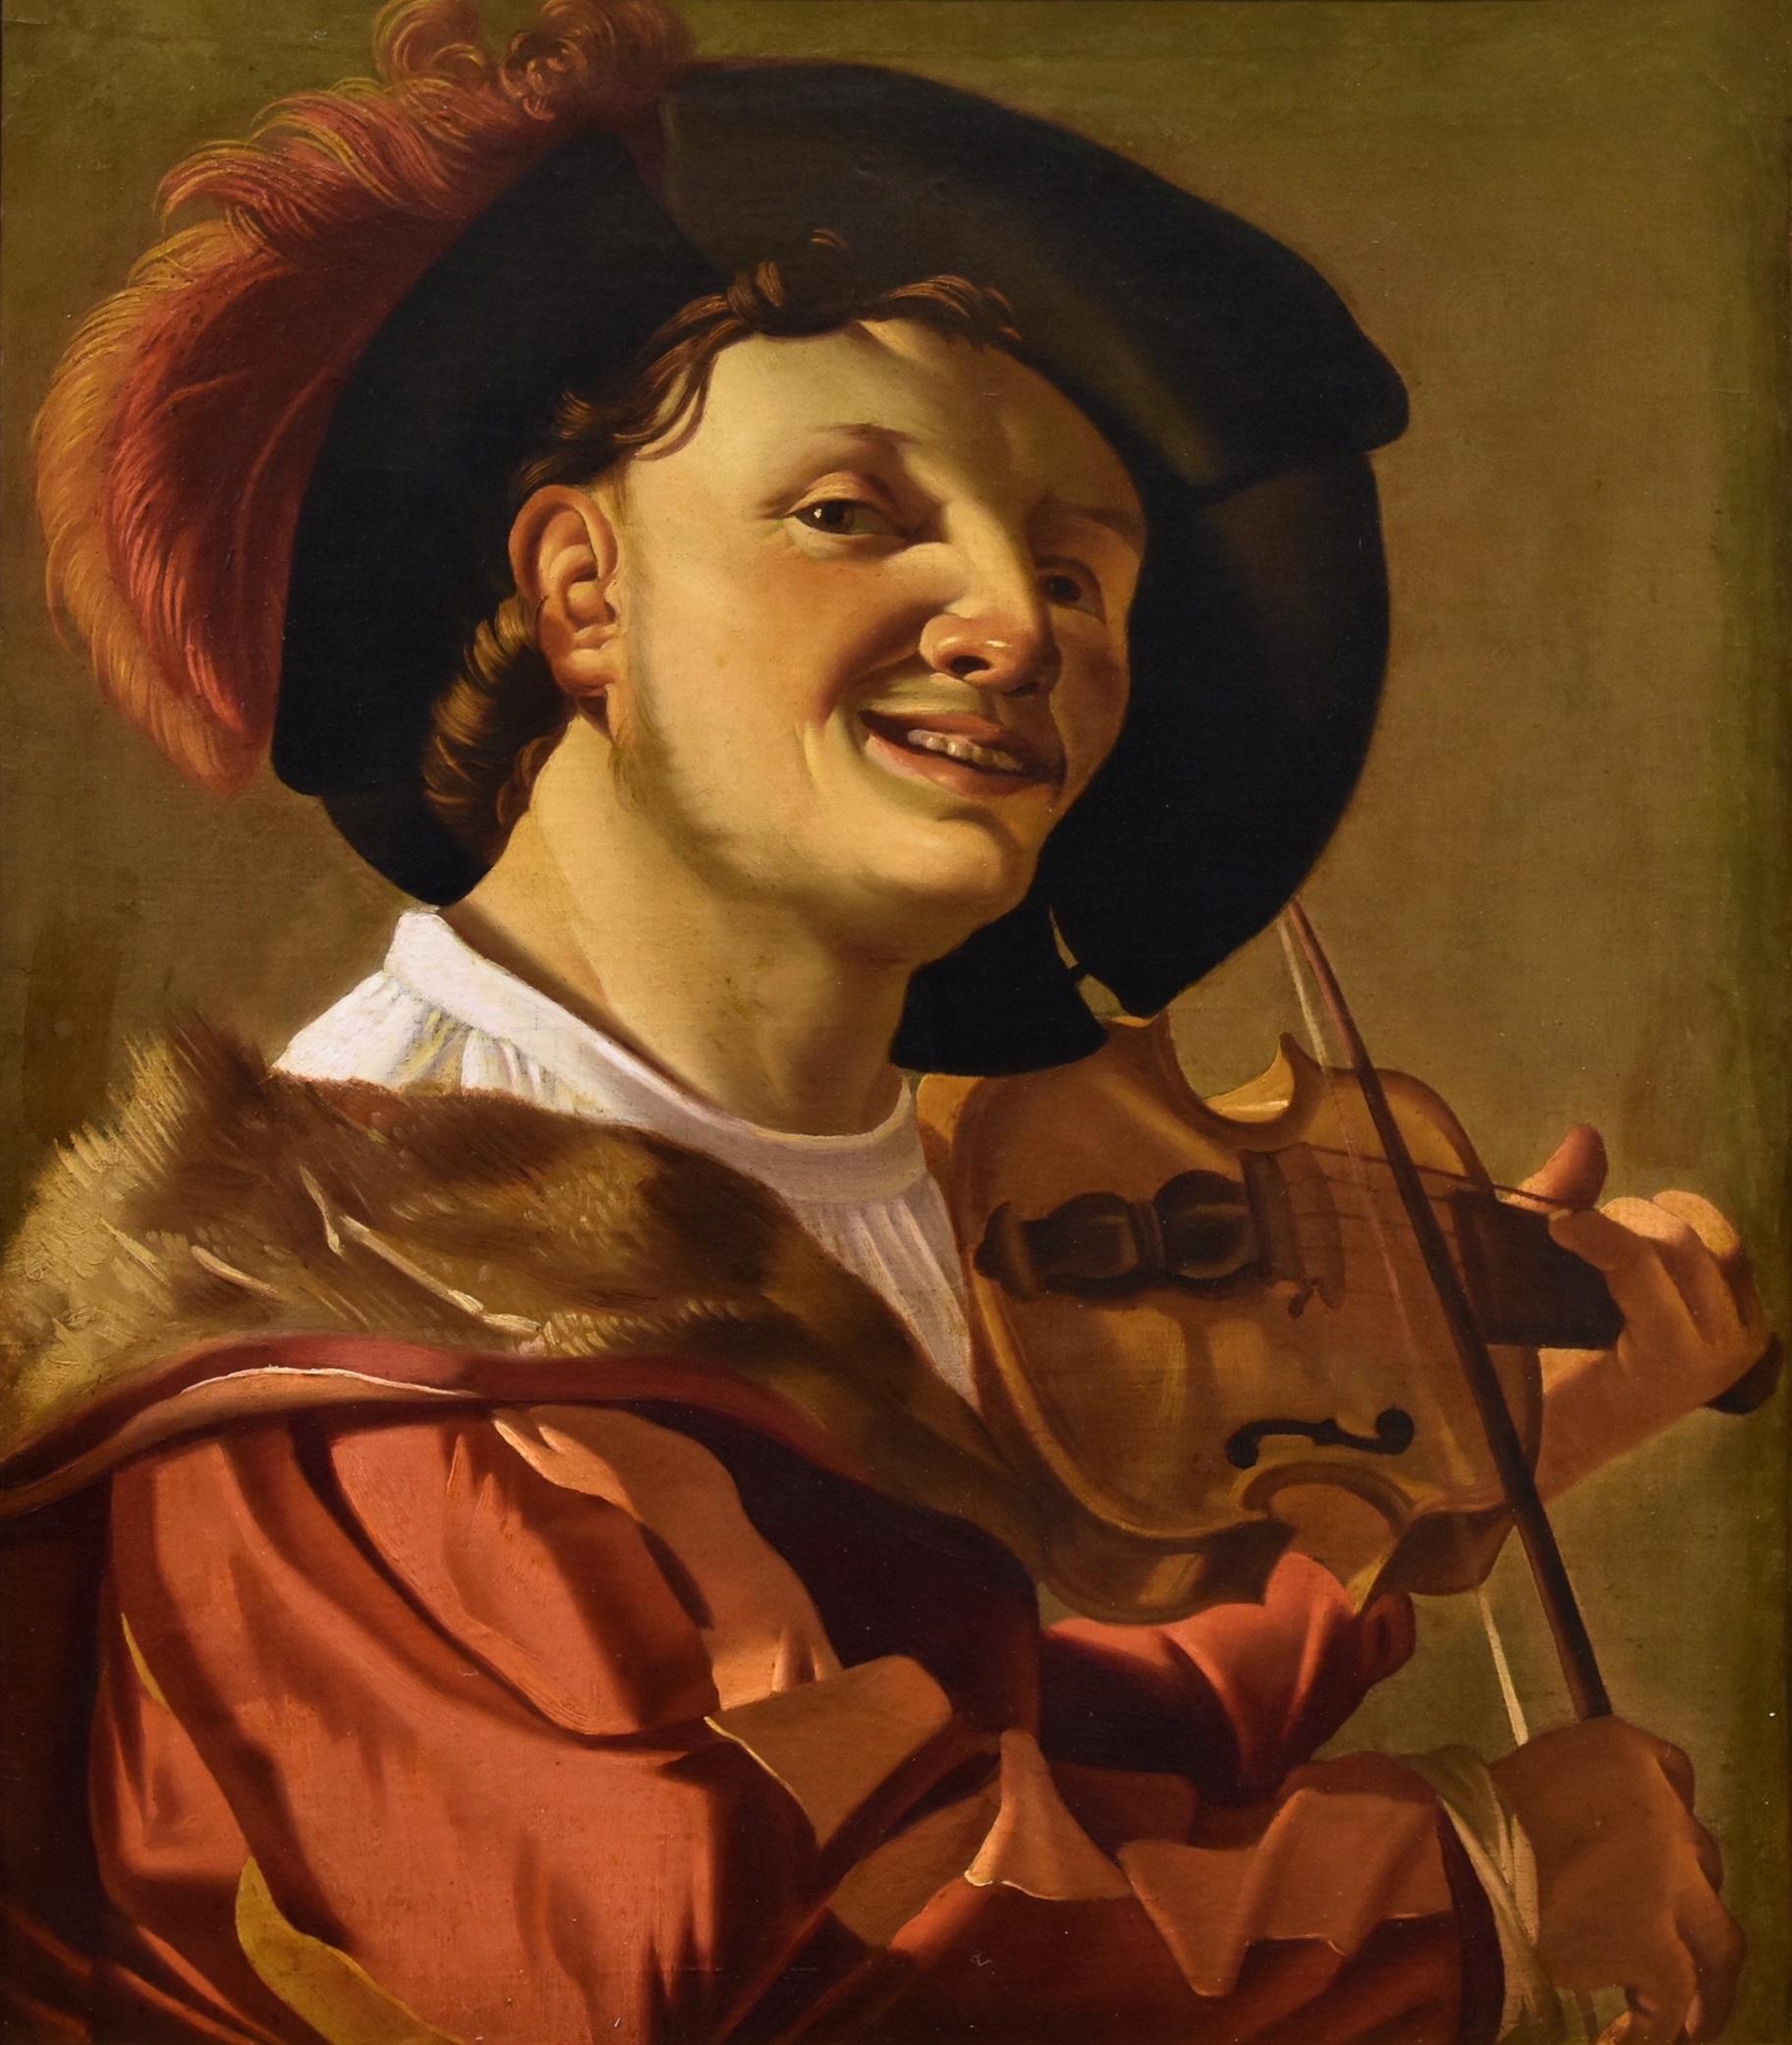 Geigenspieler Ter Brugghen Gemälde Öl auf Leinwand 17. Jahrhundert flämischer Altmeister – Painting von Hendrick Ter Brugghen (the Hague 1588-1629 Utrecht) 